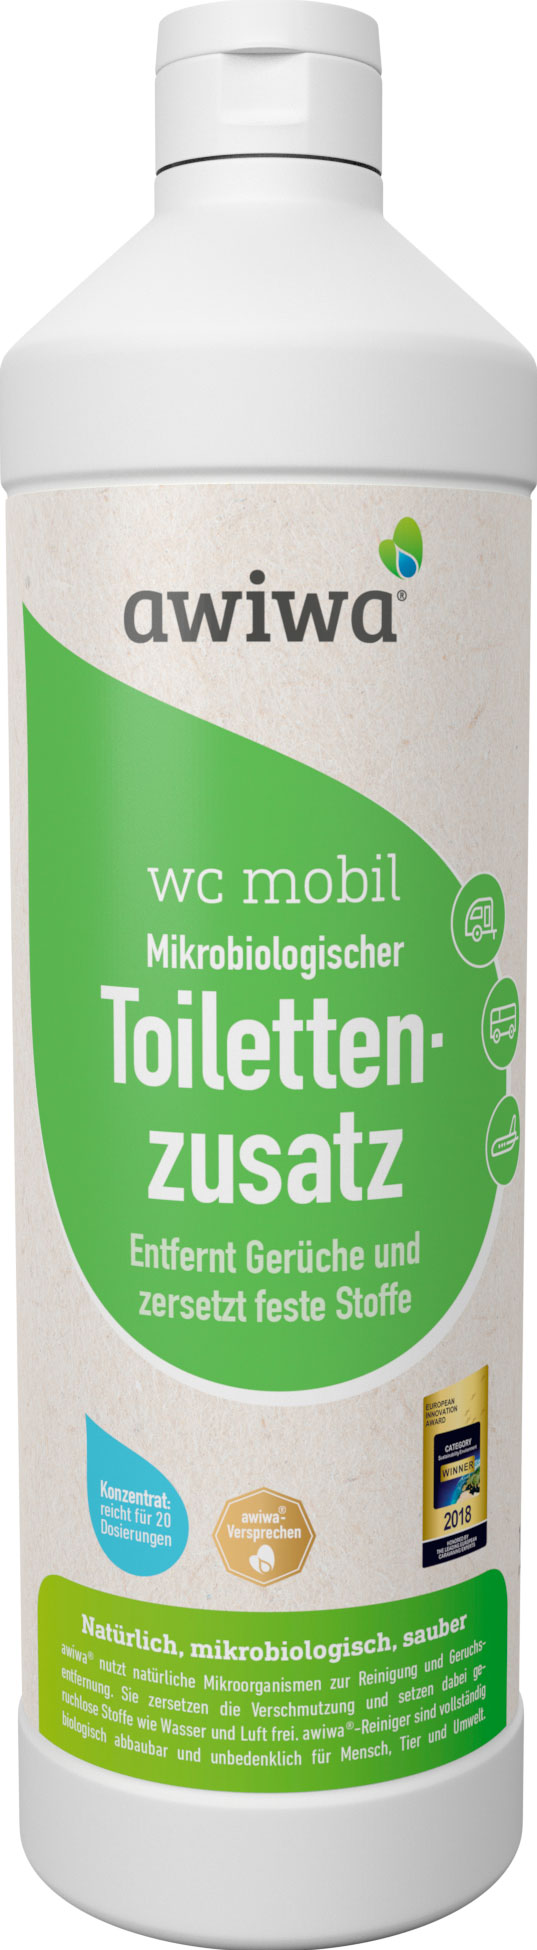 Awiwa WC Mobil Toilettenzusatz mikrobiologisch 1 Liter